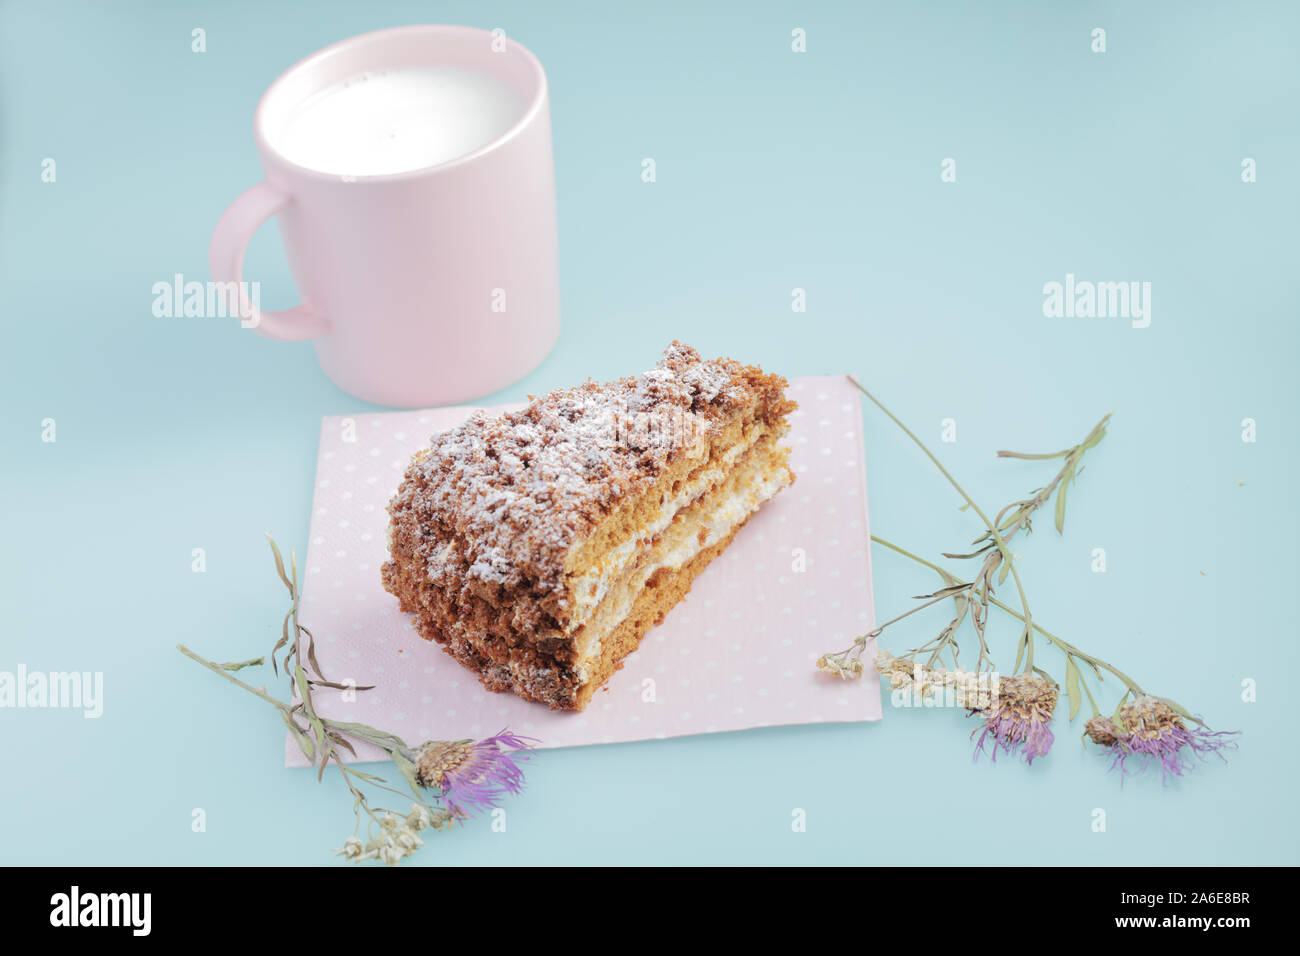 Scheibe russischer Kuchen medovik mit Glasur auf Enteneier blauem Hintergrund mit getrockneten Blumen und rosa Tasse Milch. Pastellfarben und Copyspace. Stockfoto